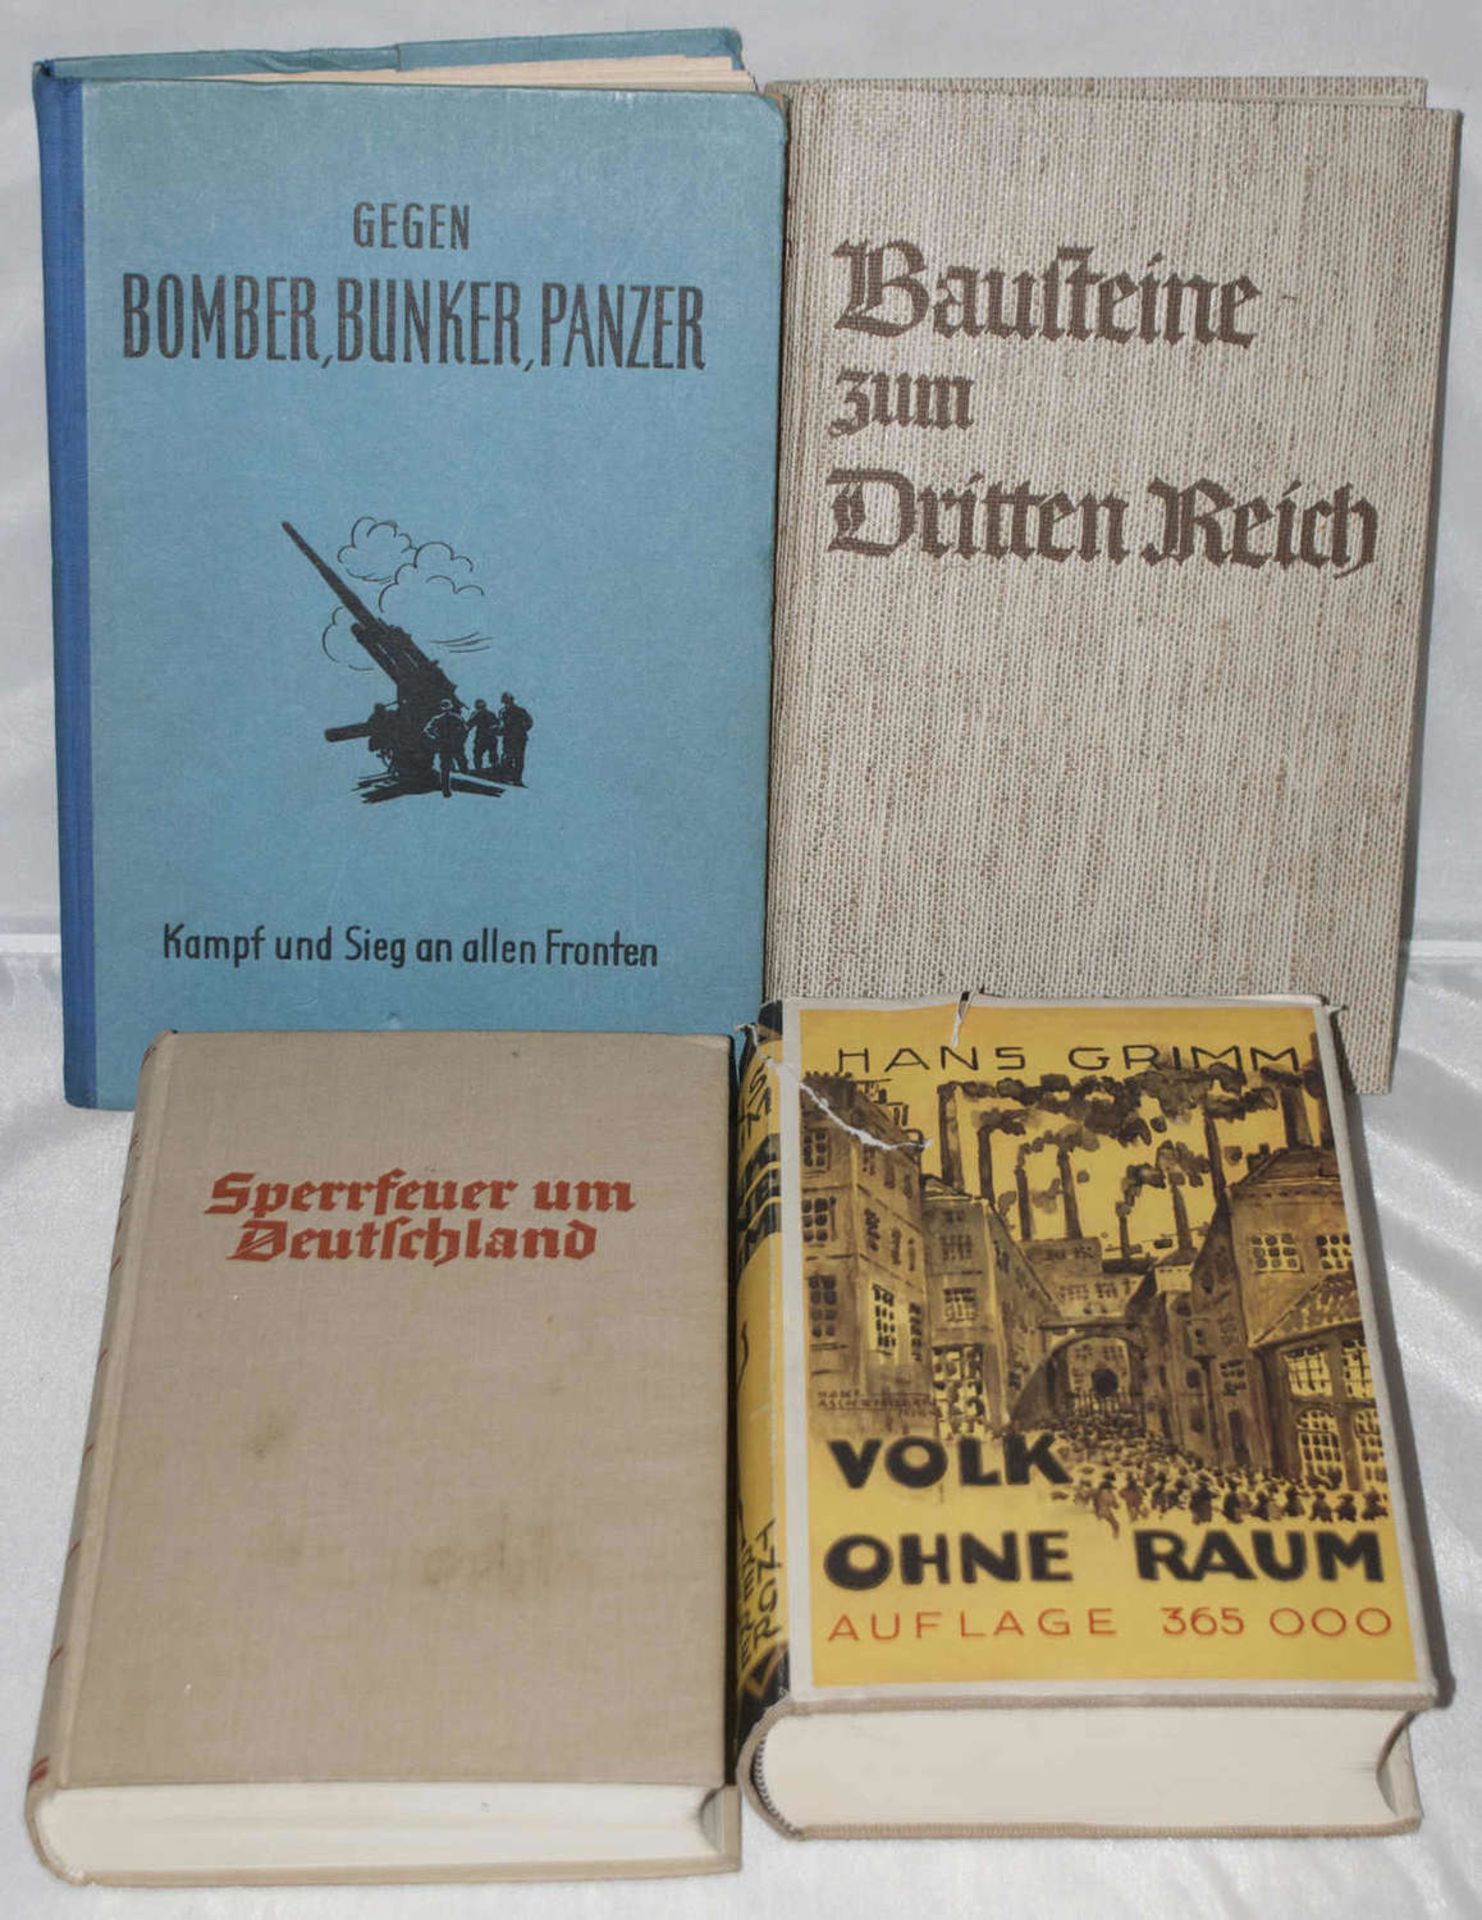 4 Bücher 2. Weltkrieg: 1."Gegen Bomber, Bunker, Panzer", 2. "Sperrfeuer um Deutschland", 3. "Volk